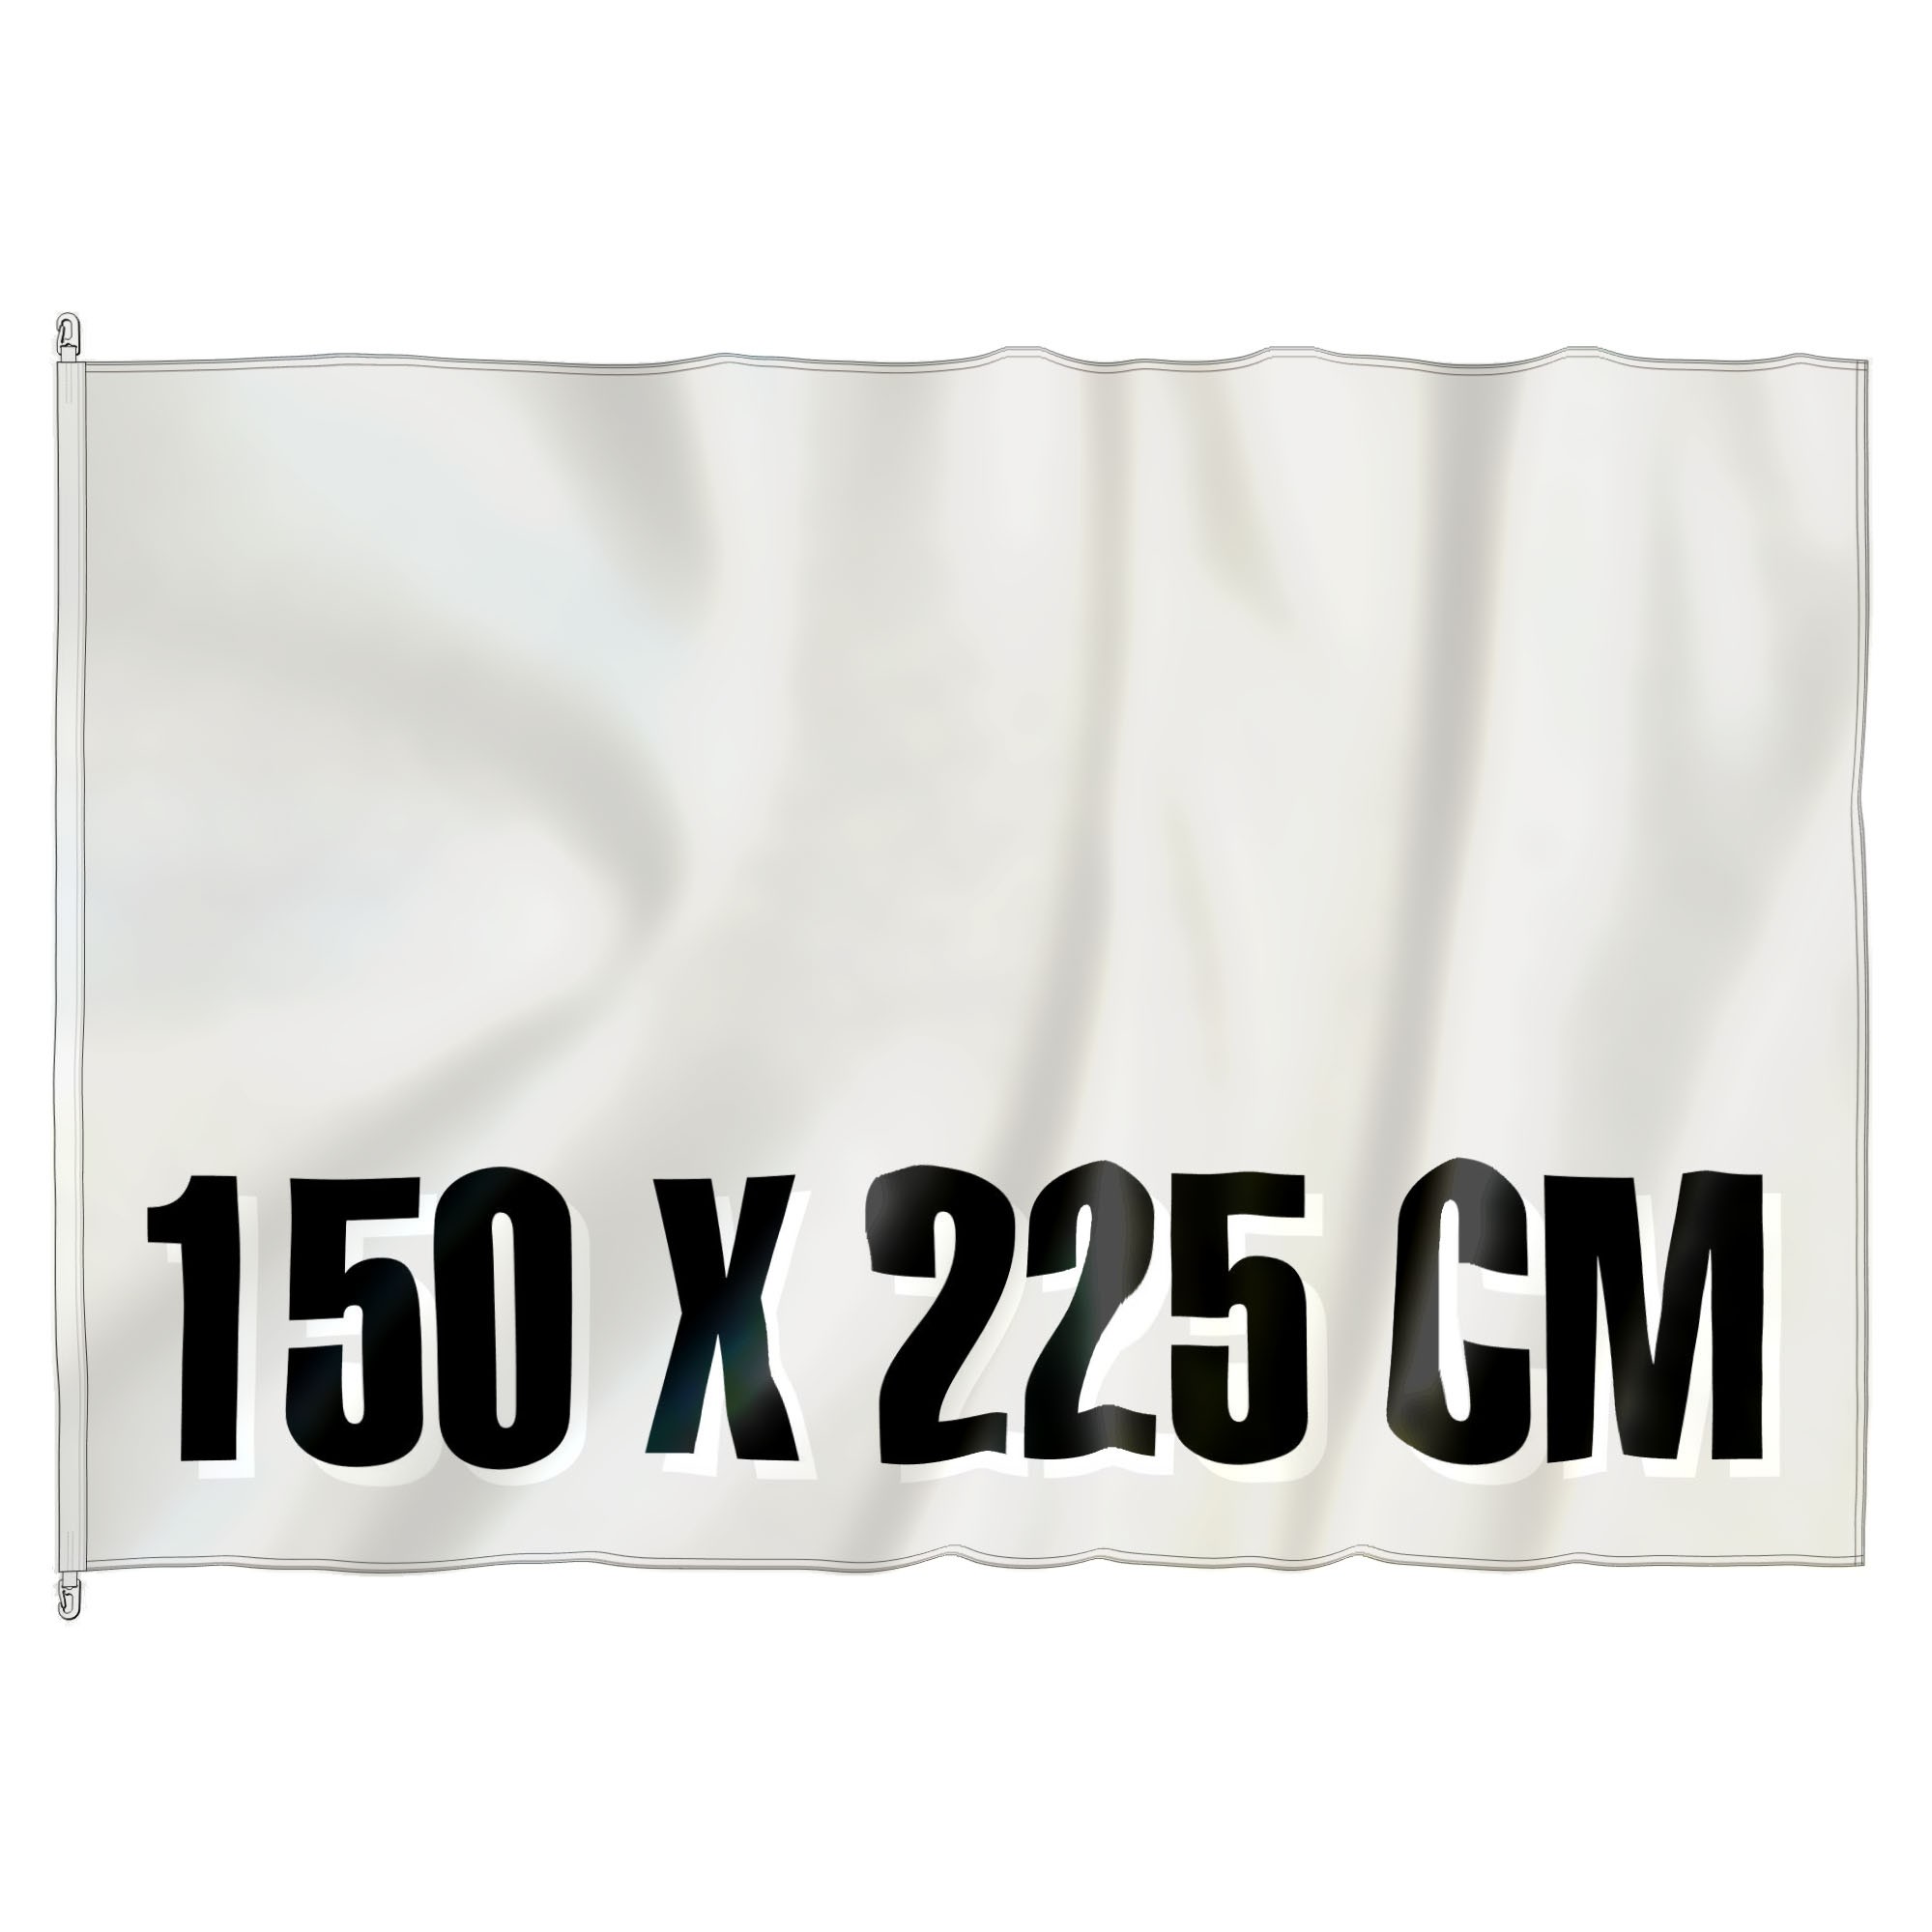 Mast Vlag 150 cm x 225 cm, fullcolor, glanspolyester 120 gr/m2